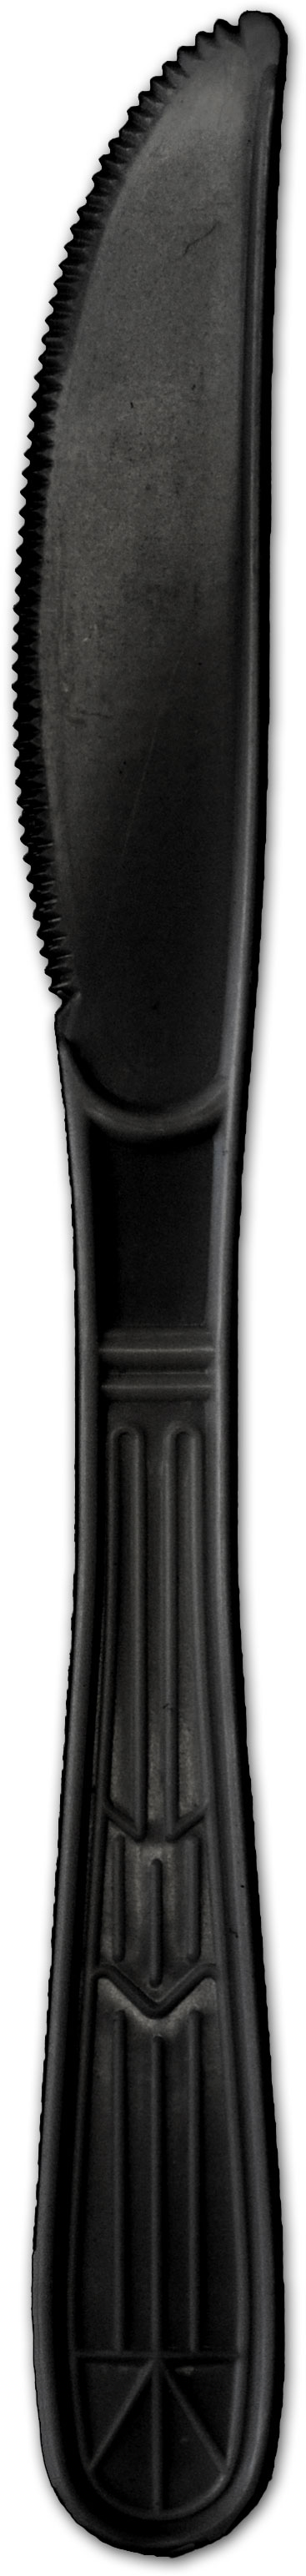 KNIFE BLACK HEAVY POLYPROPYLENE 1000 (P3505B)